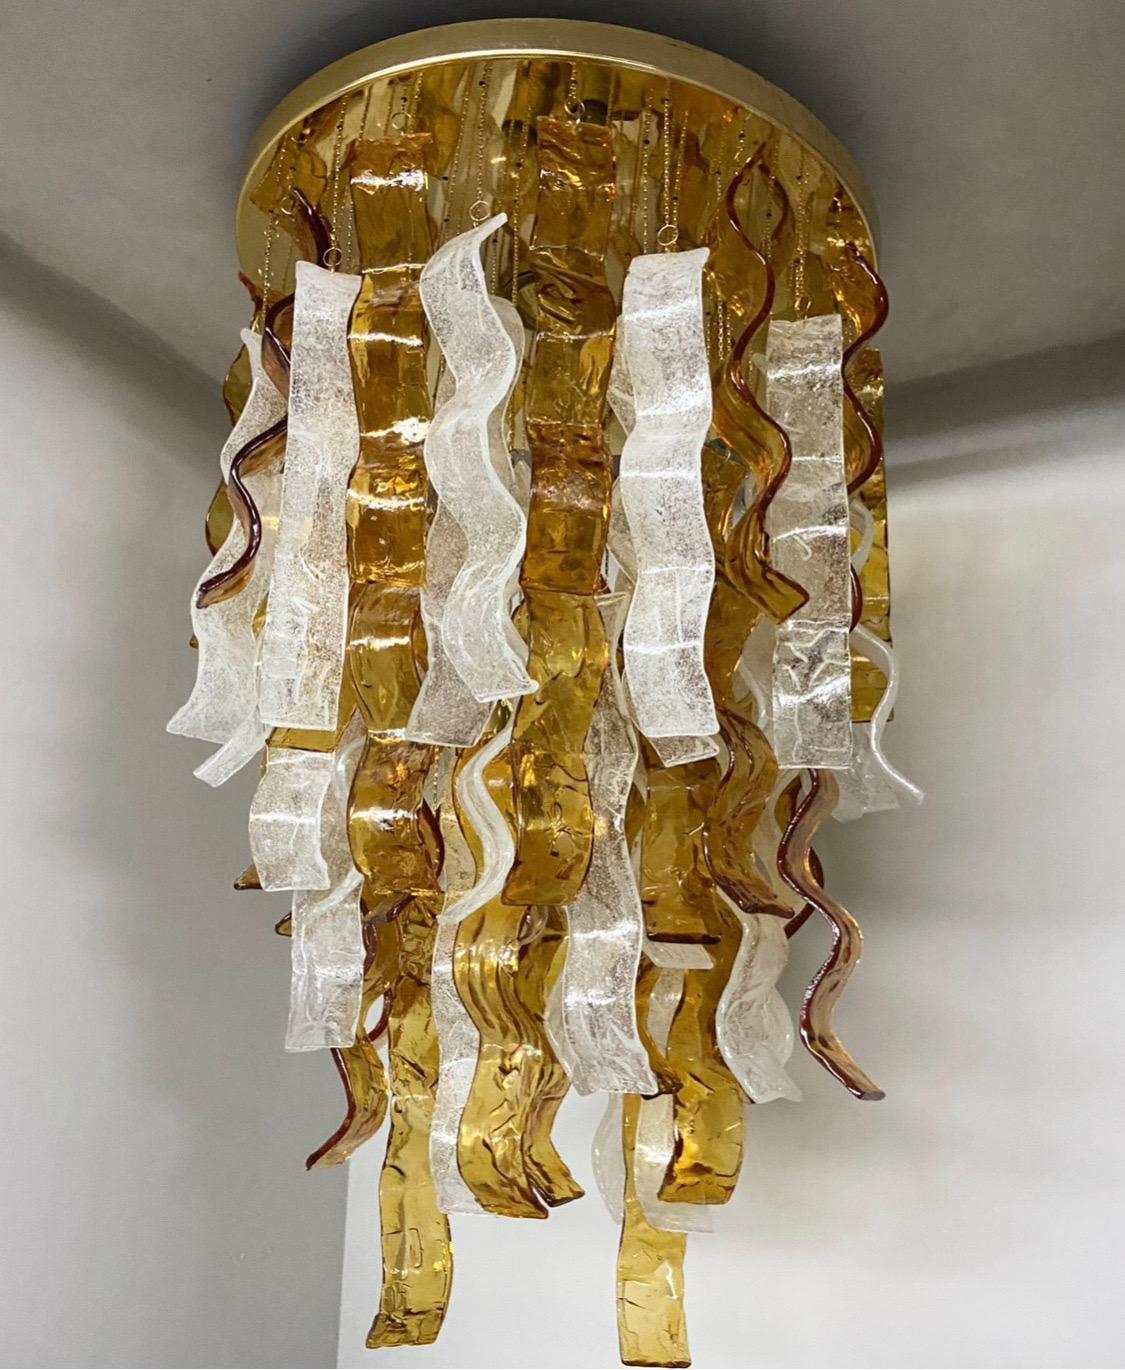 Un étonnant lustre en cascade en verre de Murano marron et clair, conçu et fabriqué par Murano dans les années 70. Il provient d'un important magasin de luminaires qui cessait ses activités, il n'a donc jamais été installé dans une maison et